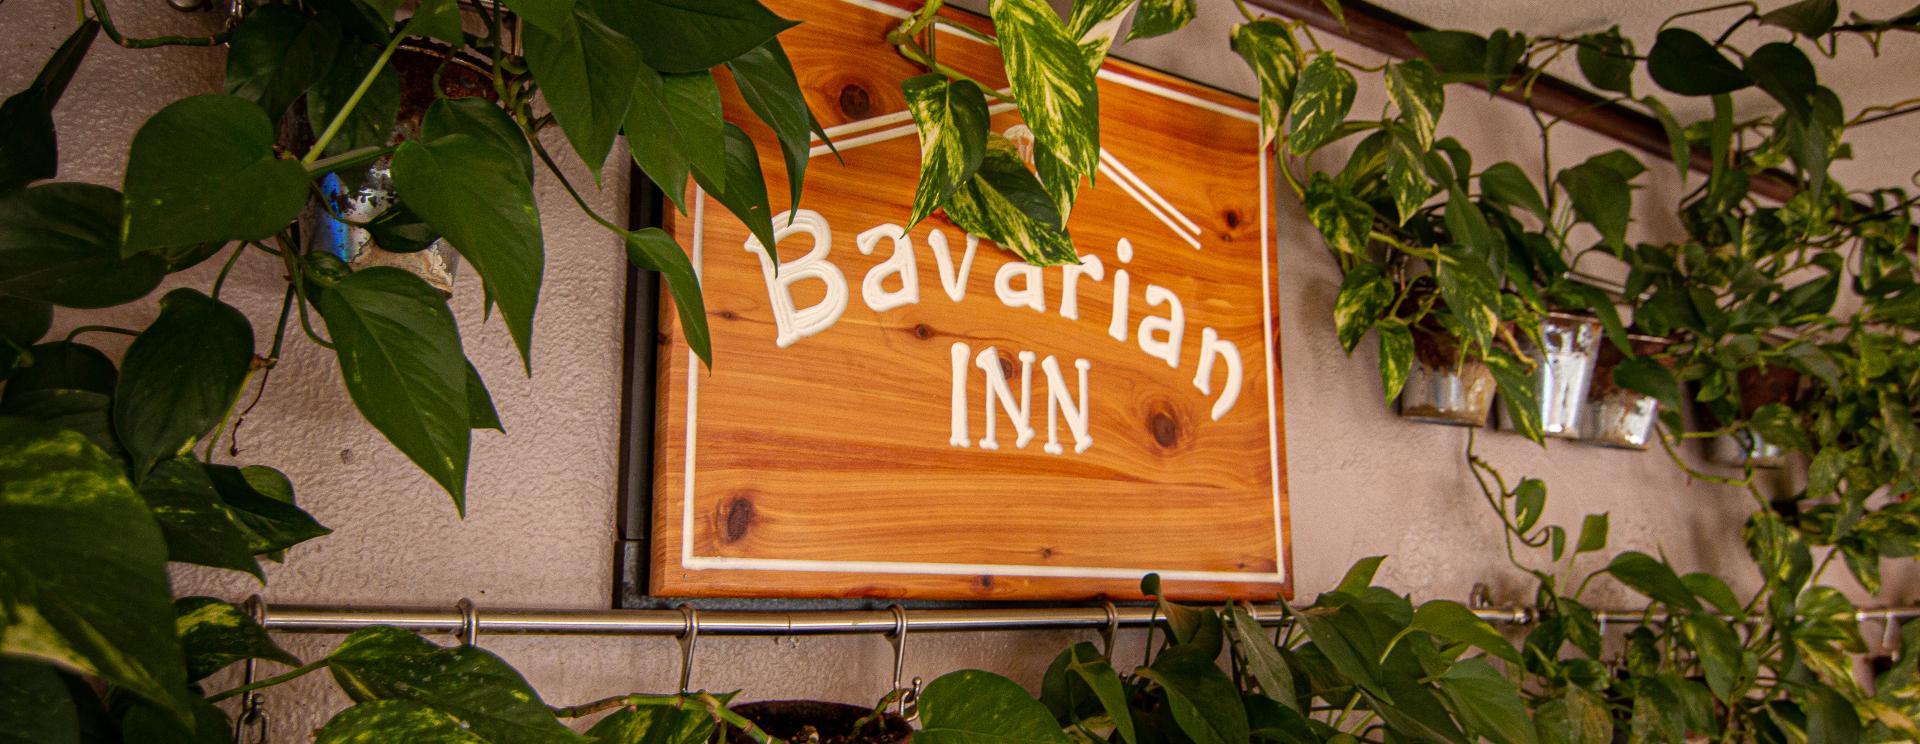 Bavarian Inn, Black Hills